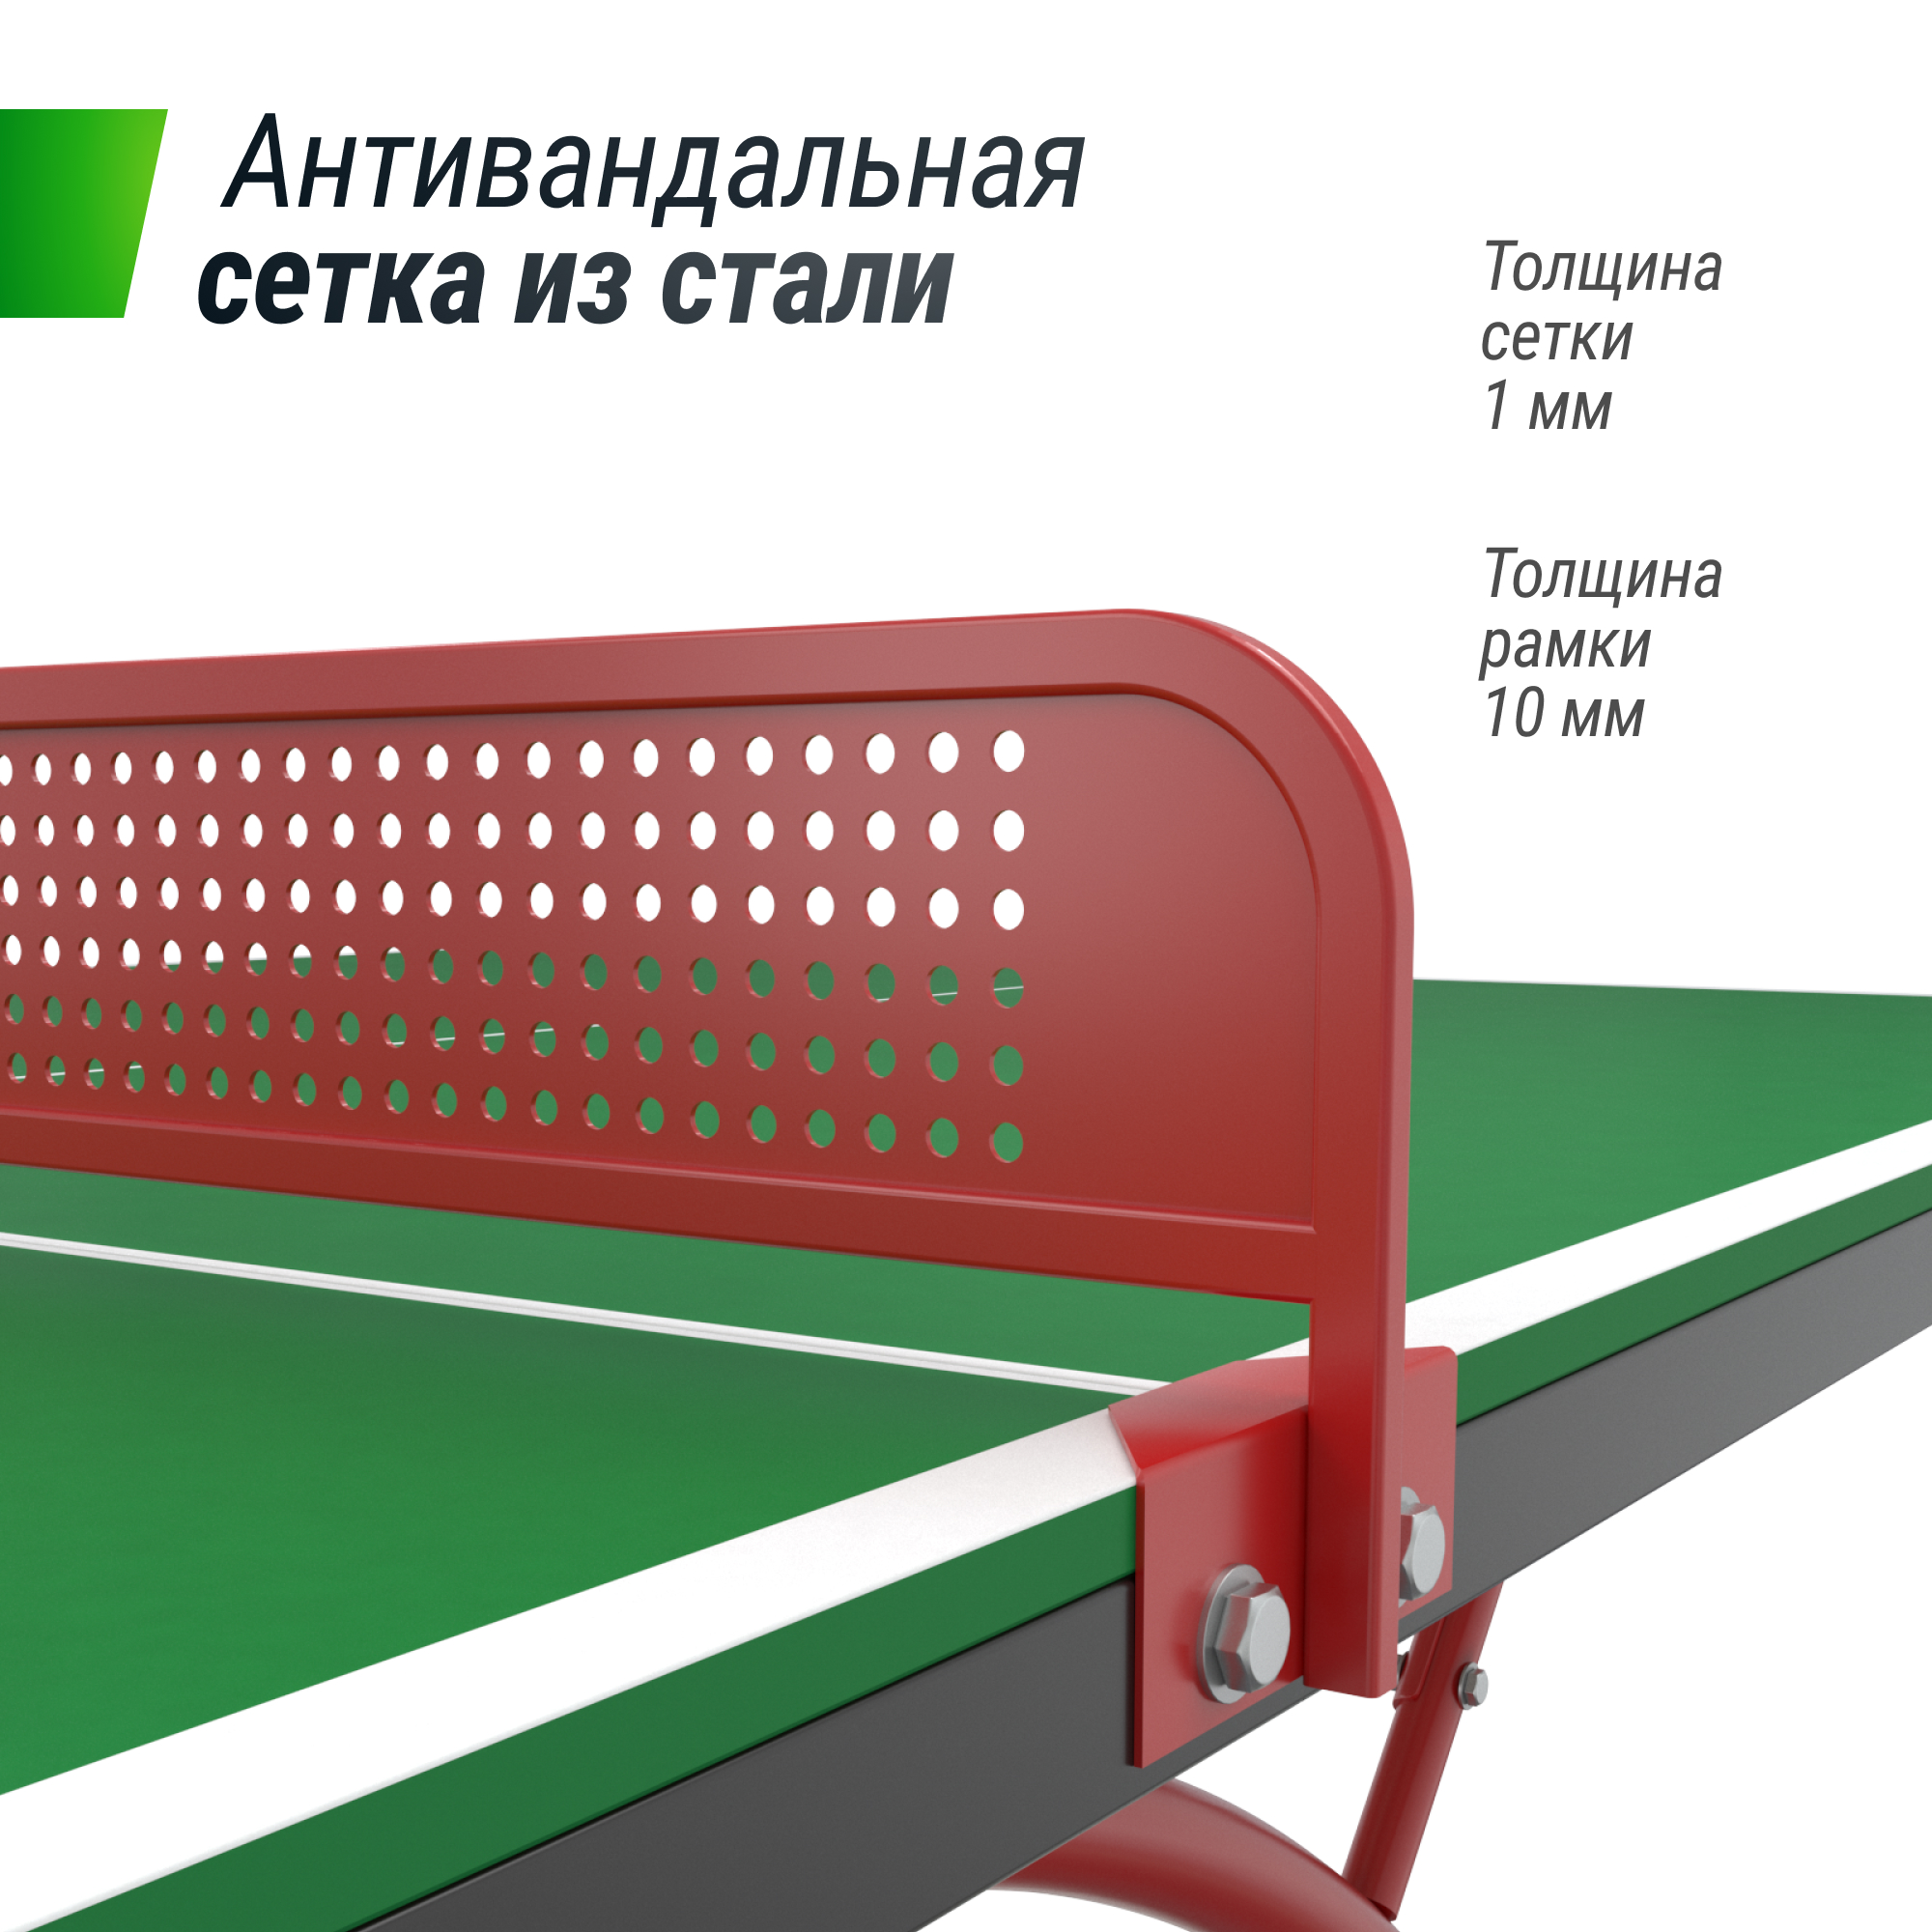 Антивандальный теннисный стол UNIX Line 14 mm SMC (Green/Red) - 7 